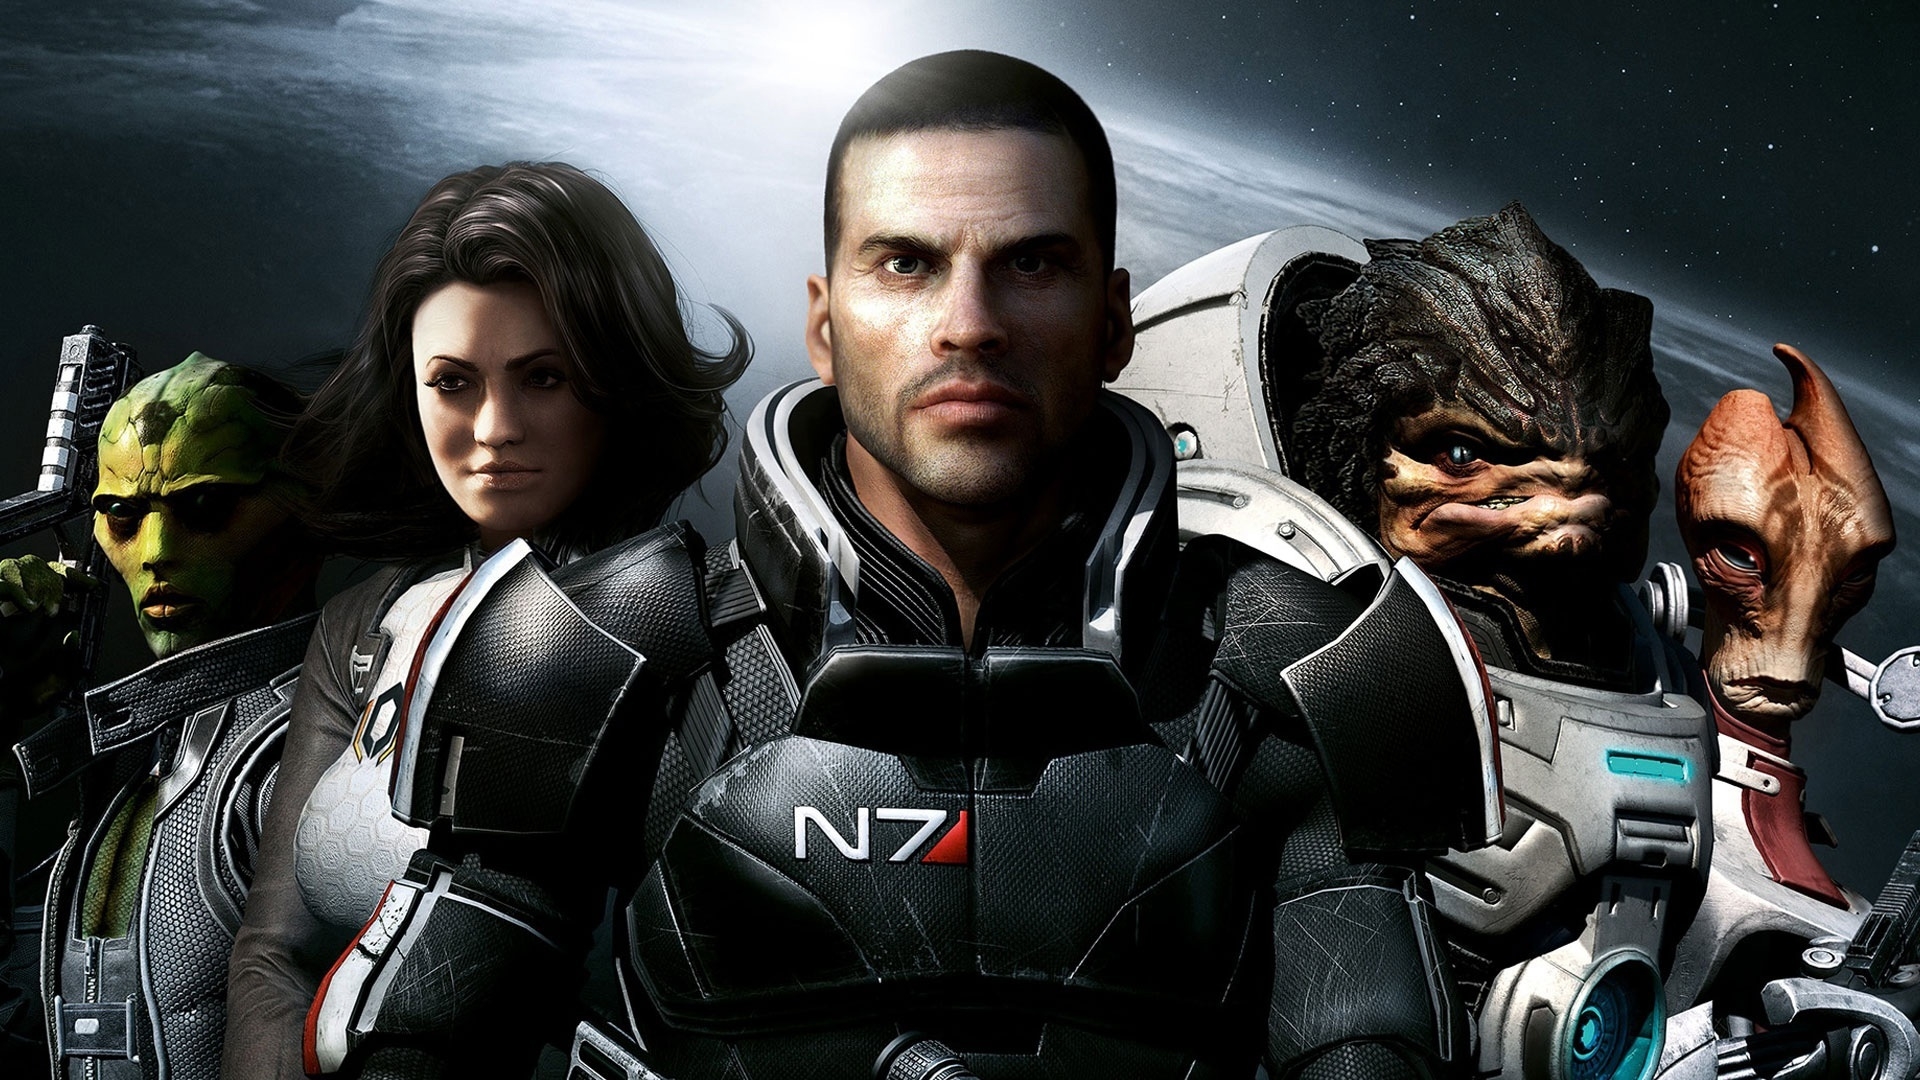 Mass Effect 2 Team for 1920 x 1080 HDTV 1080p resolution